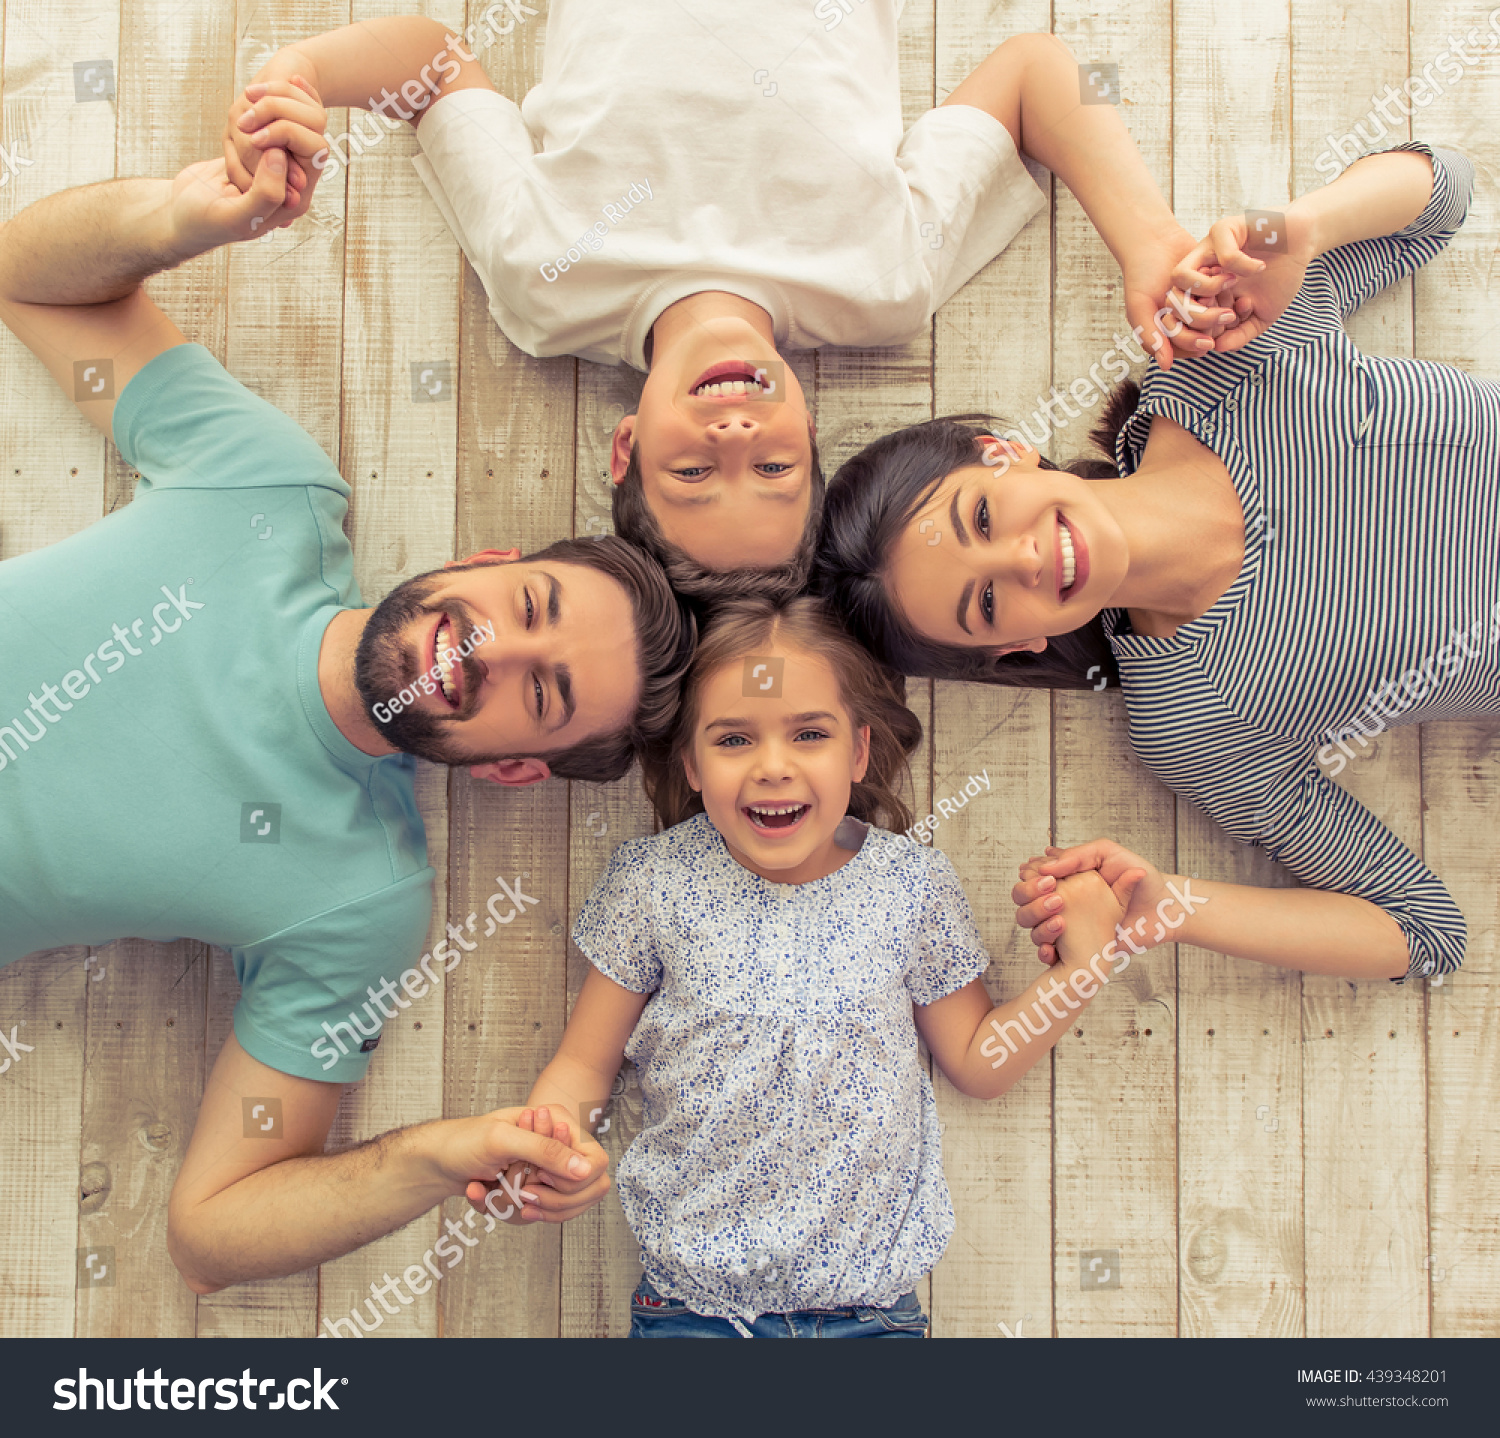 Семейные удовольствия. Семья со счастливым ребёнком. Семейная фотосессия. Счастливые дети и родители. Гармоничная семья.